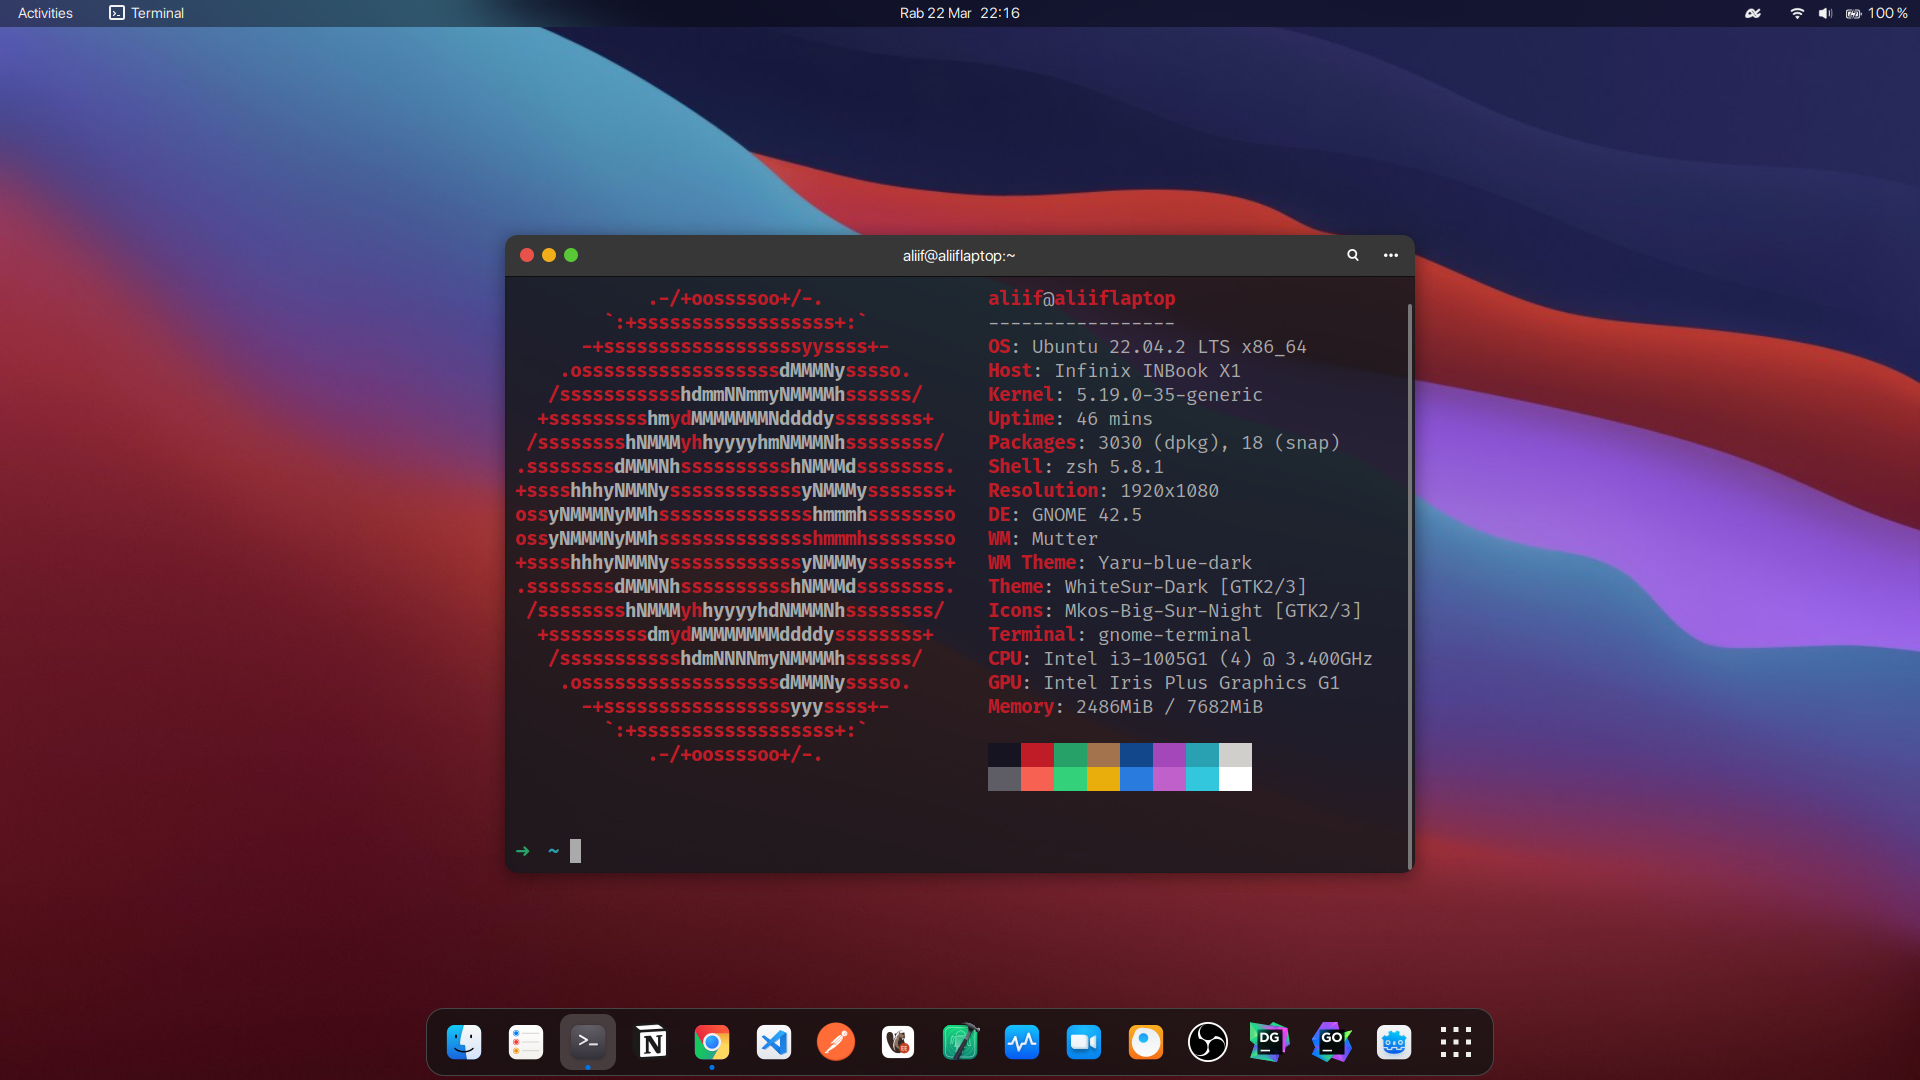 Ubuntu Aliif sudah di custom theme agar seperti macos